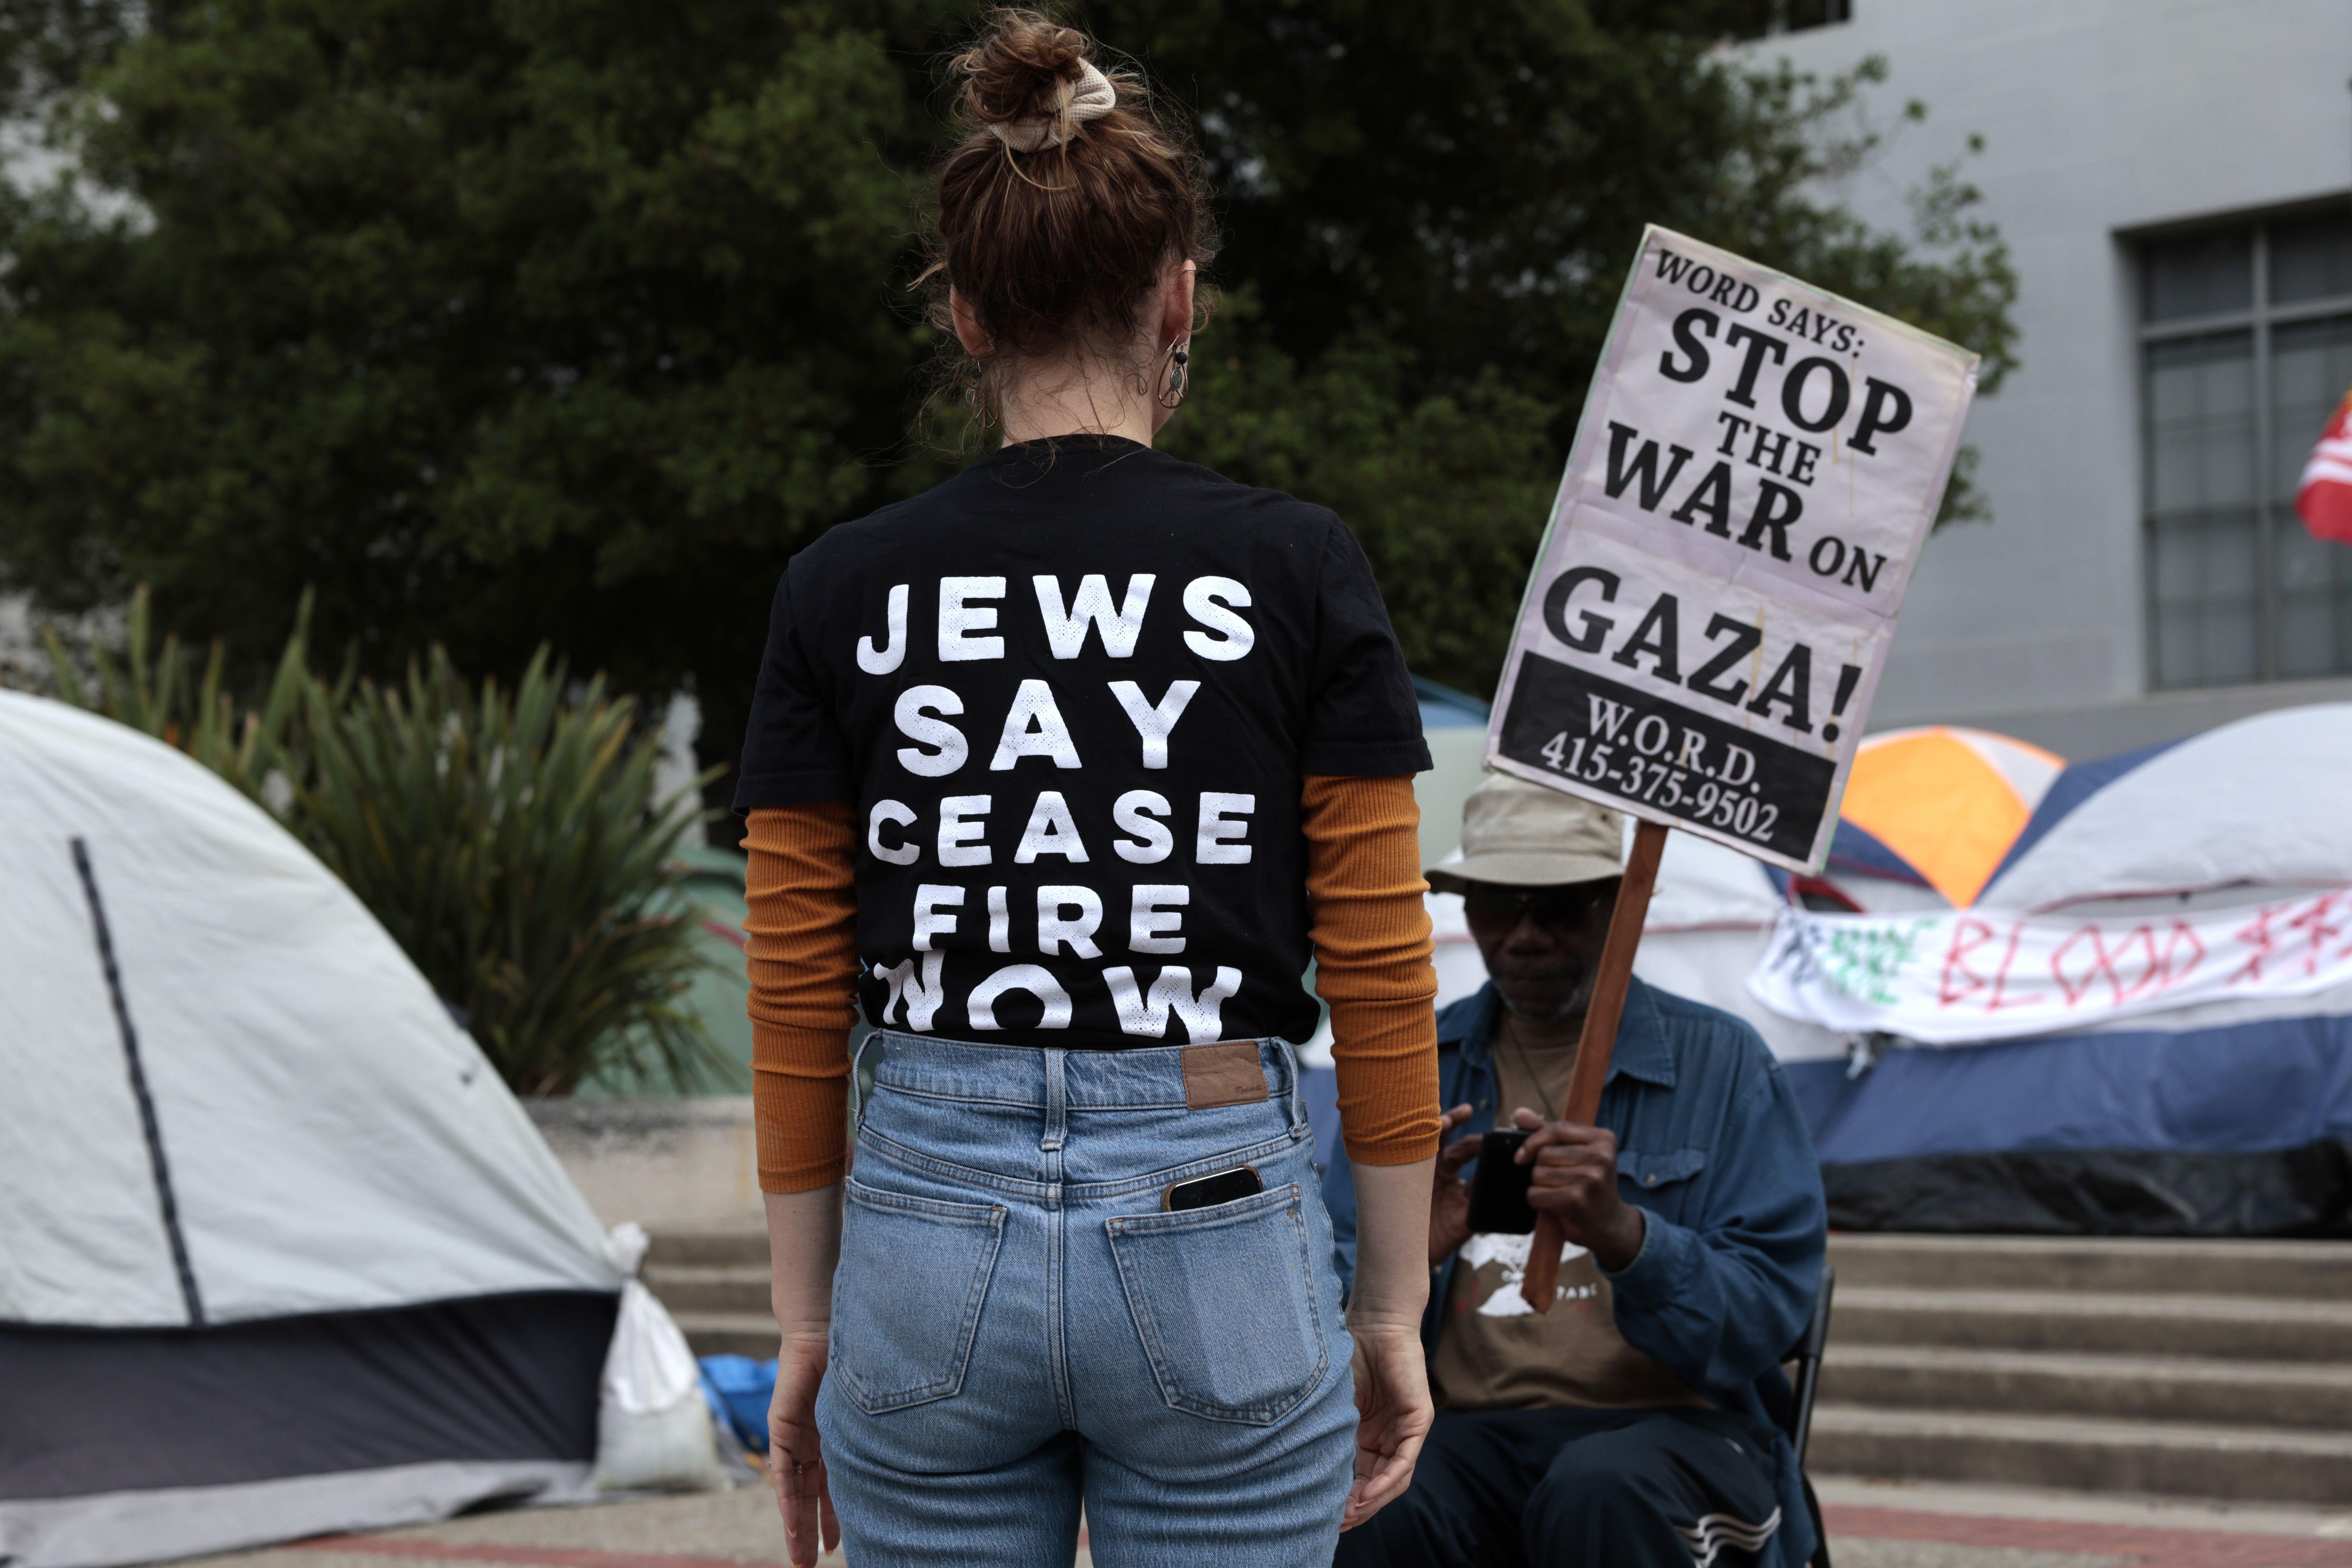 طالبة في جامعة كاليفورنيا بيركلي مكتوب على قميصها "اليهود يقولون وقف إطلاق نار" 